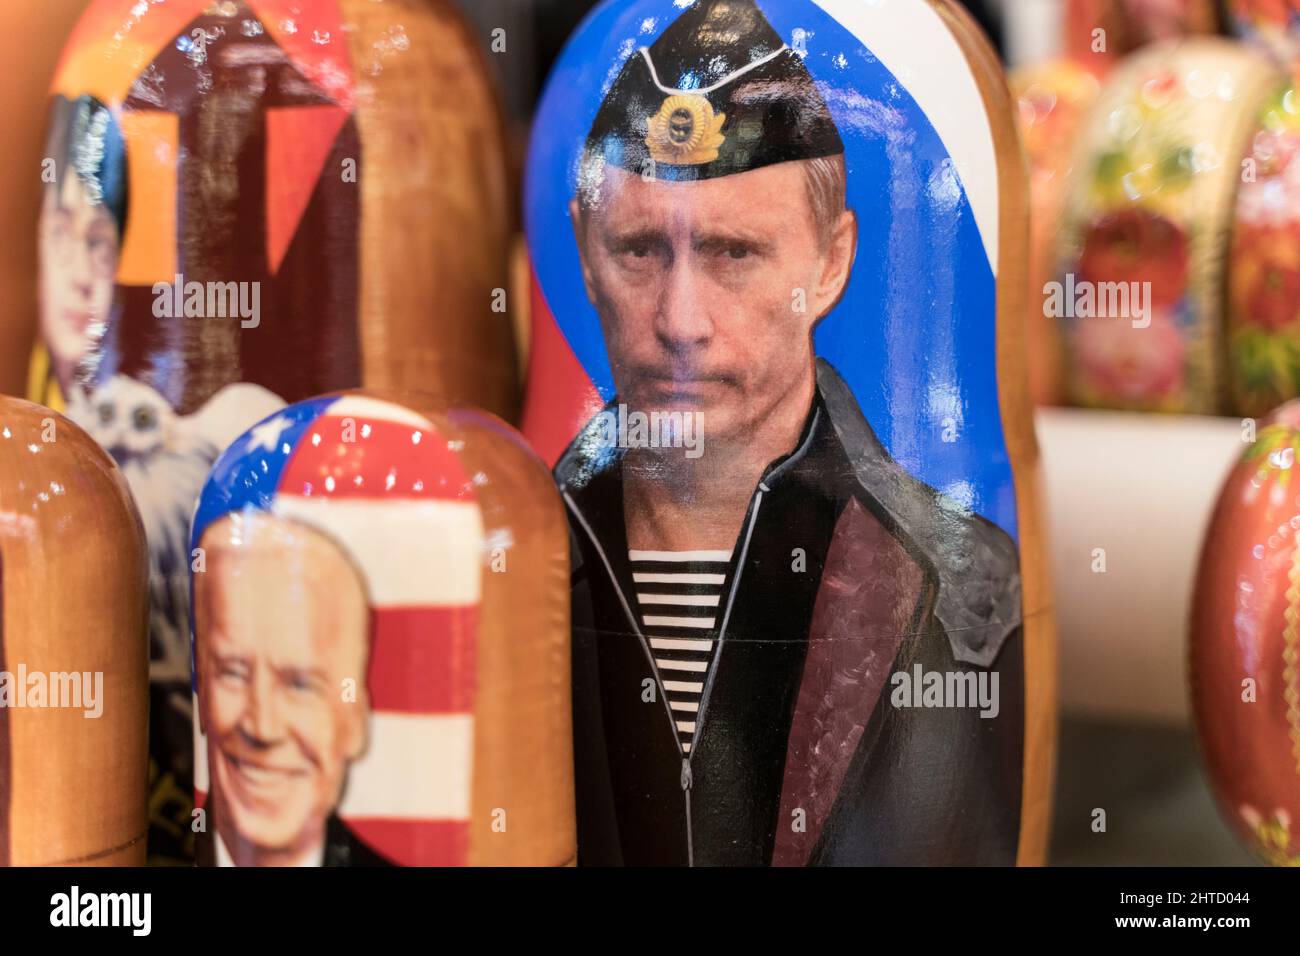 Moskau, Russland - 26. Februar 2022: Putin in Form von russischen Nestpuppen in einem Souvenirladen in Moskau. Beziehungen zwischen Russland und den USA . Hochwertige Fotos Stockfoto